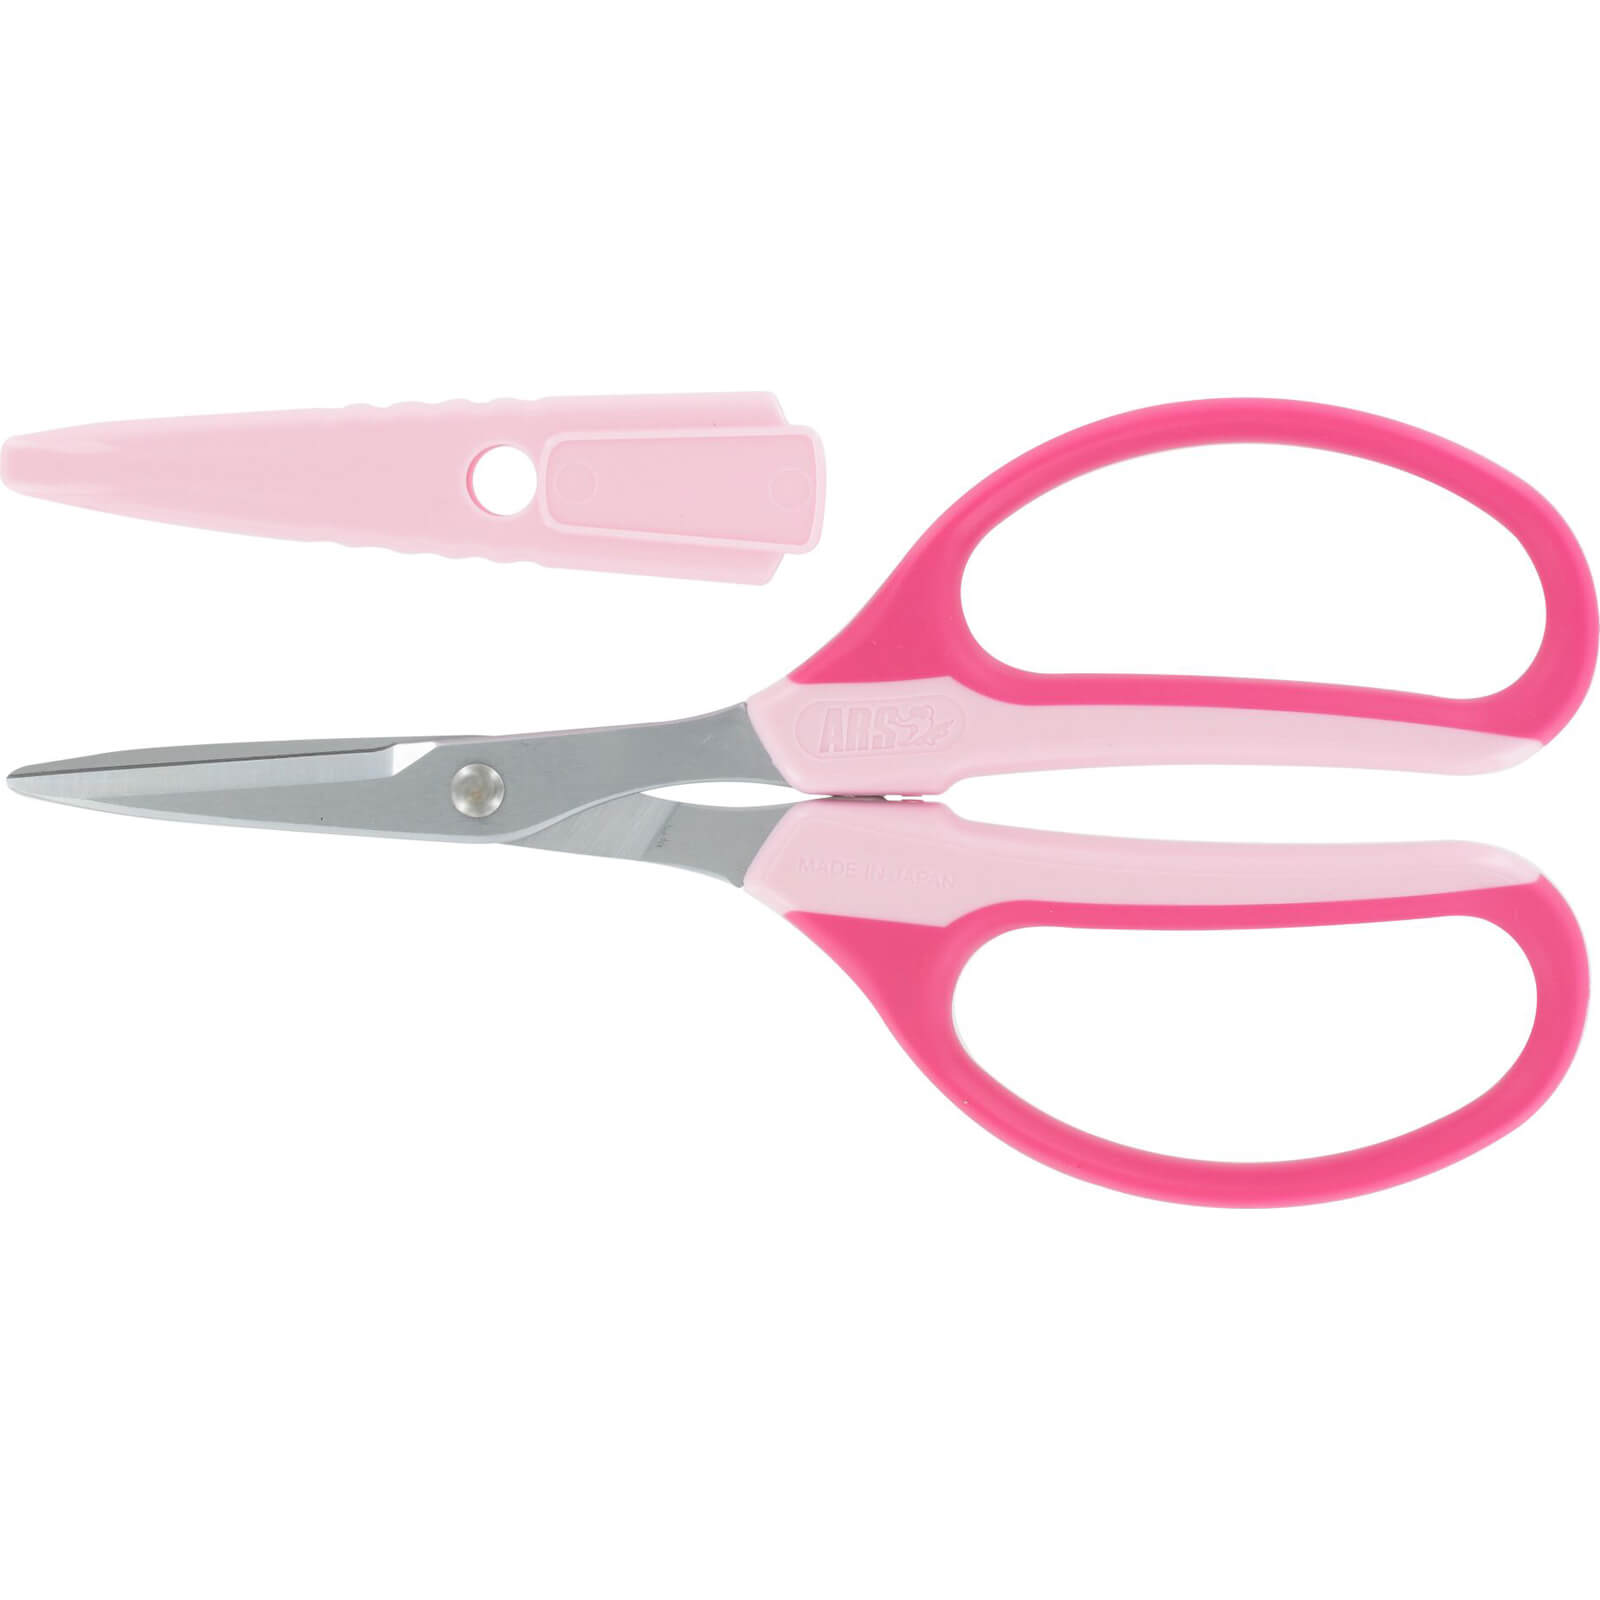 ARS 330HN General Purpose Scissors Pink